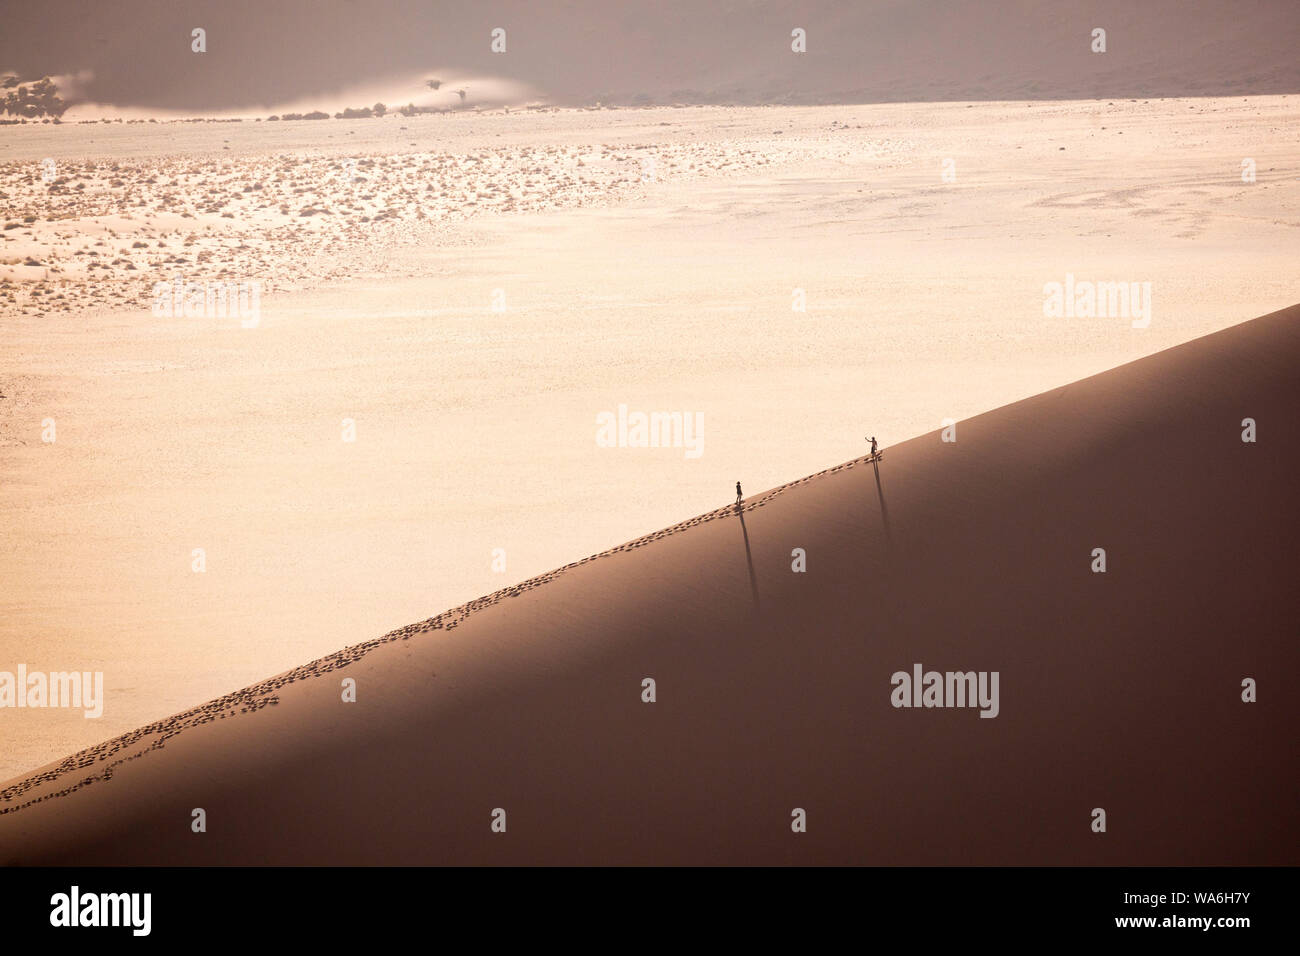 Zwei Menschen wandern auf einer Sanddüne in der Namibwüste, Namibia, Afrika Stock Photo